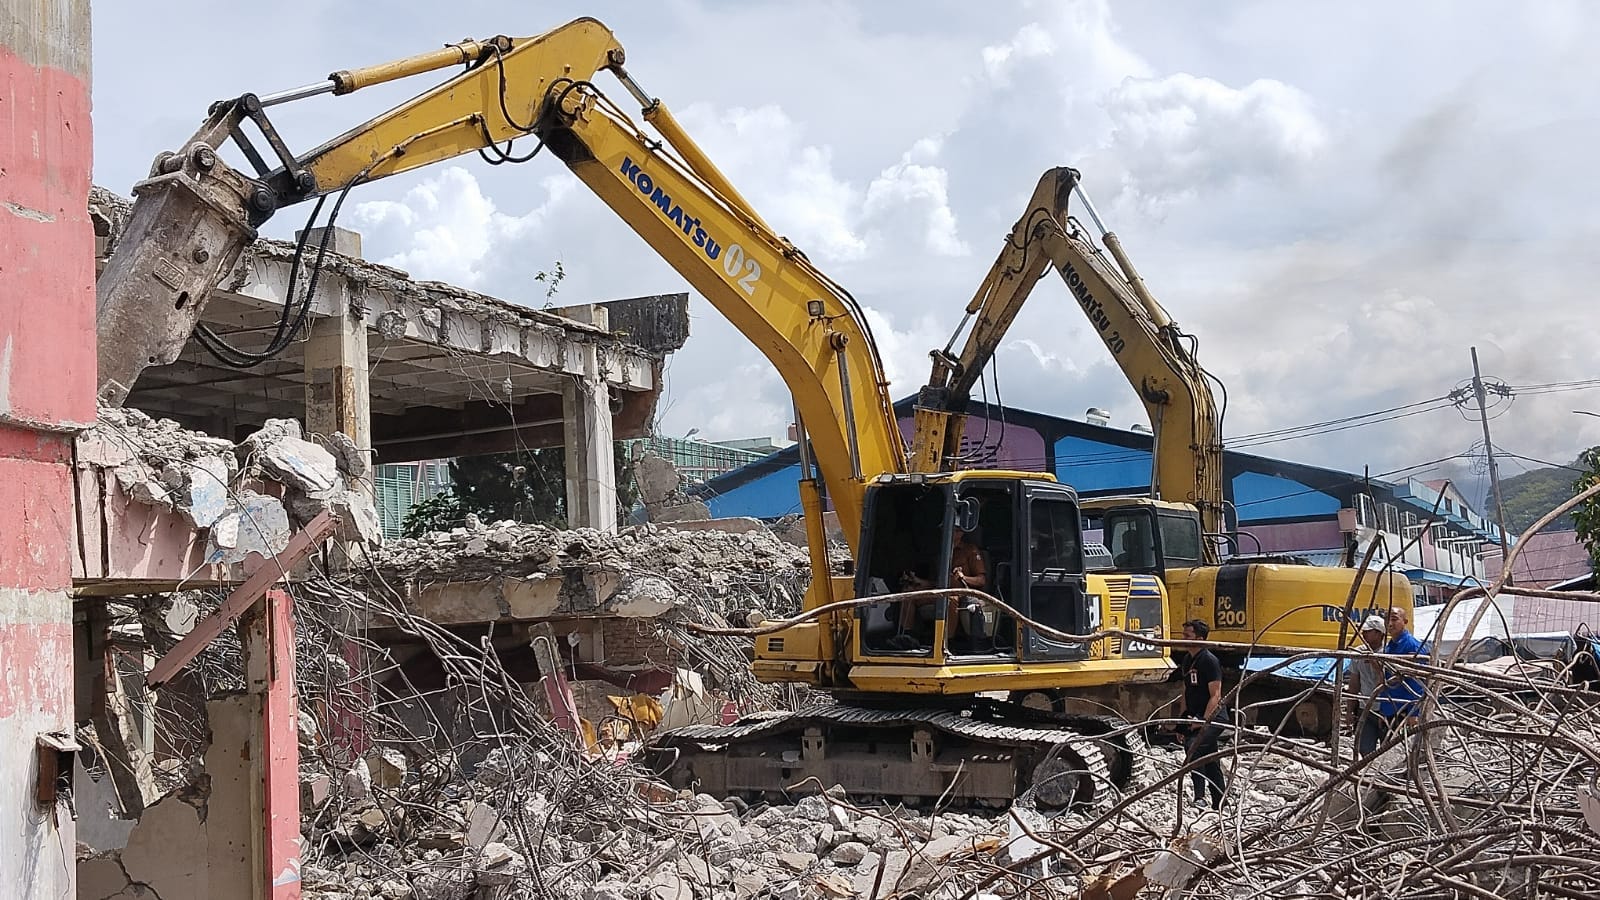 Ekskavator merobohkan bangunan fase VII Pasar Raya Padang (Foto: Diskominfo Padang)